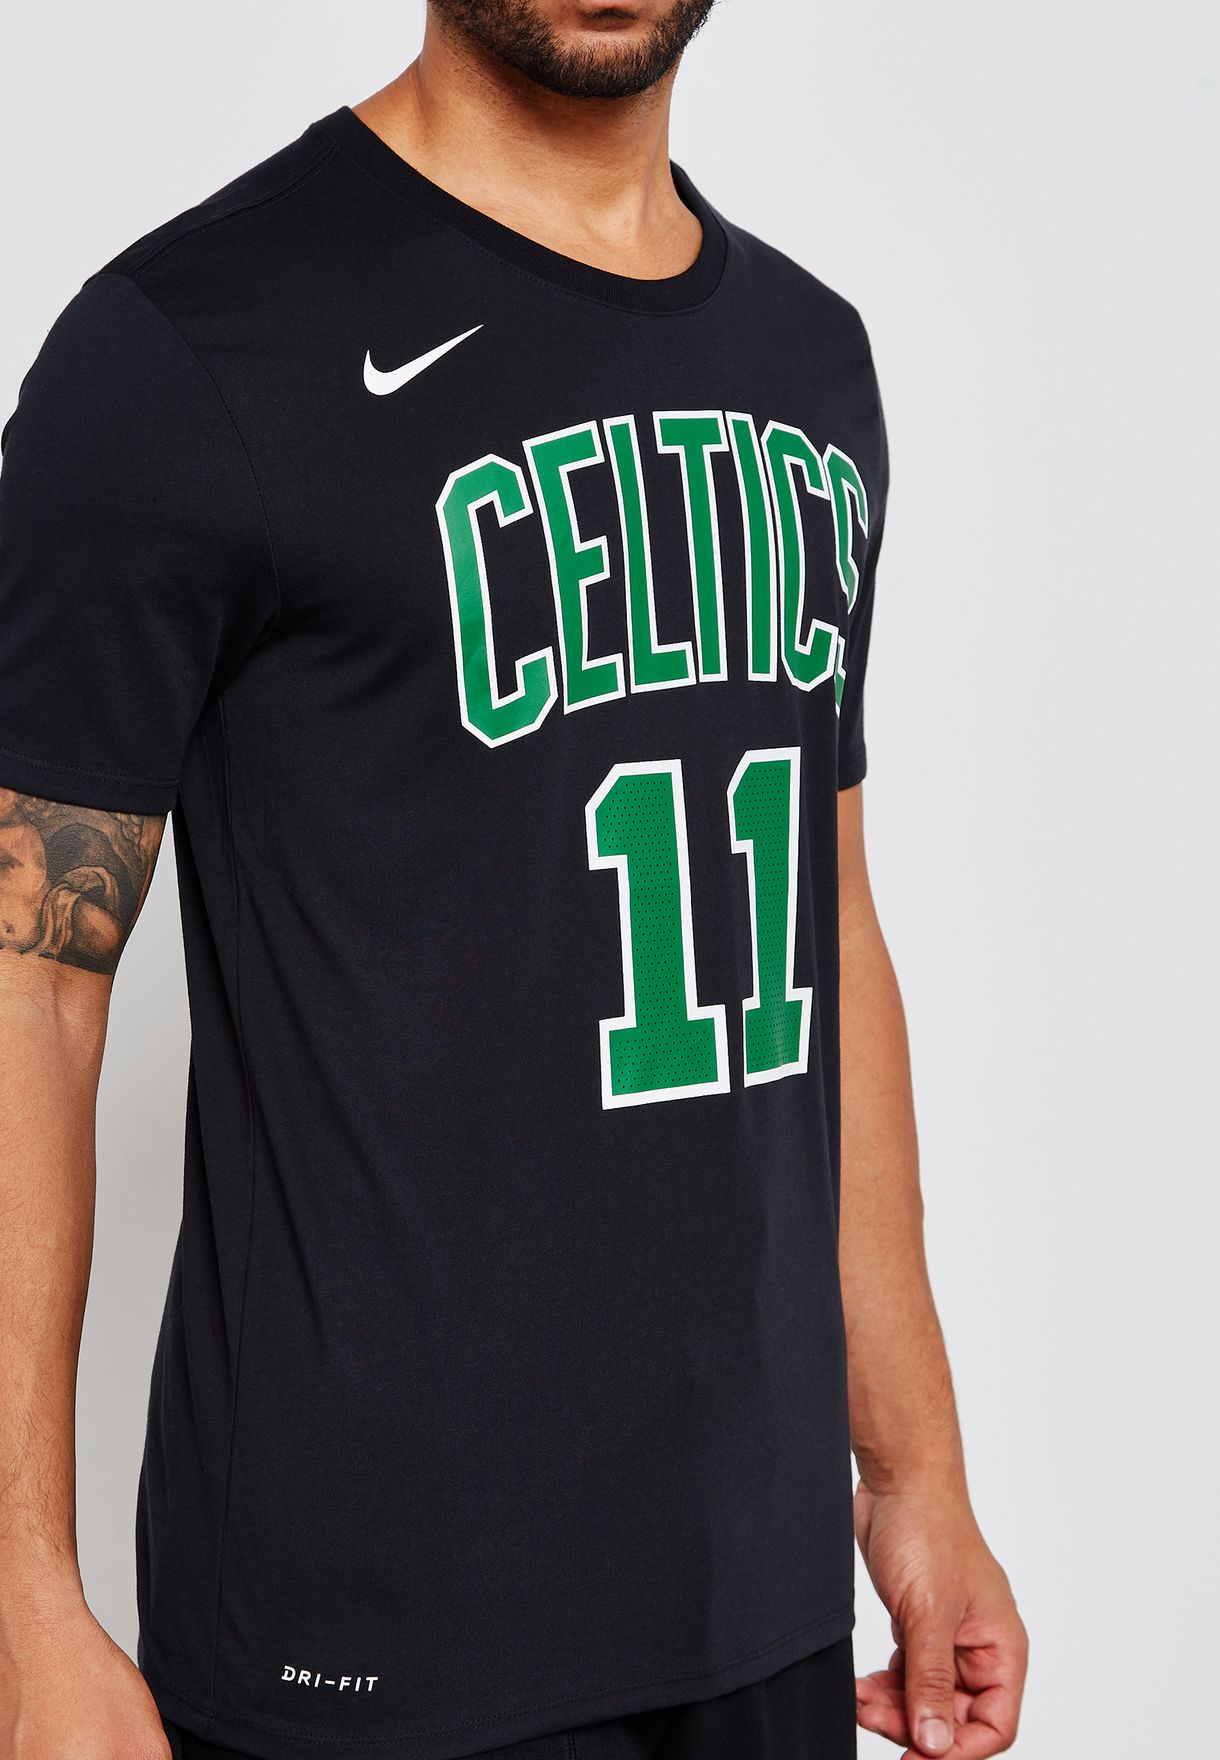 Boston Celtics Kyrie Irving Uomo Jersey T-shirt Maniche Corte Basket in esecuzione di formazione Maglietta 